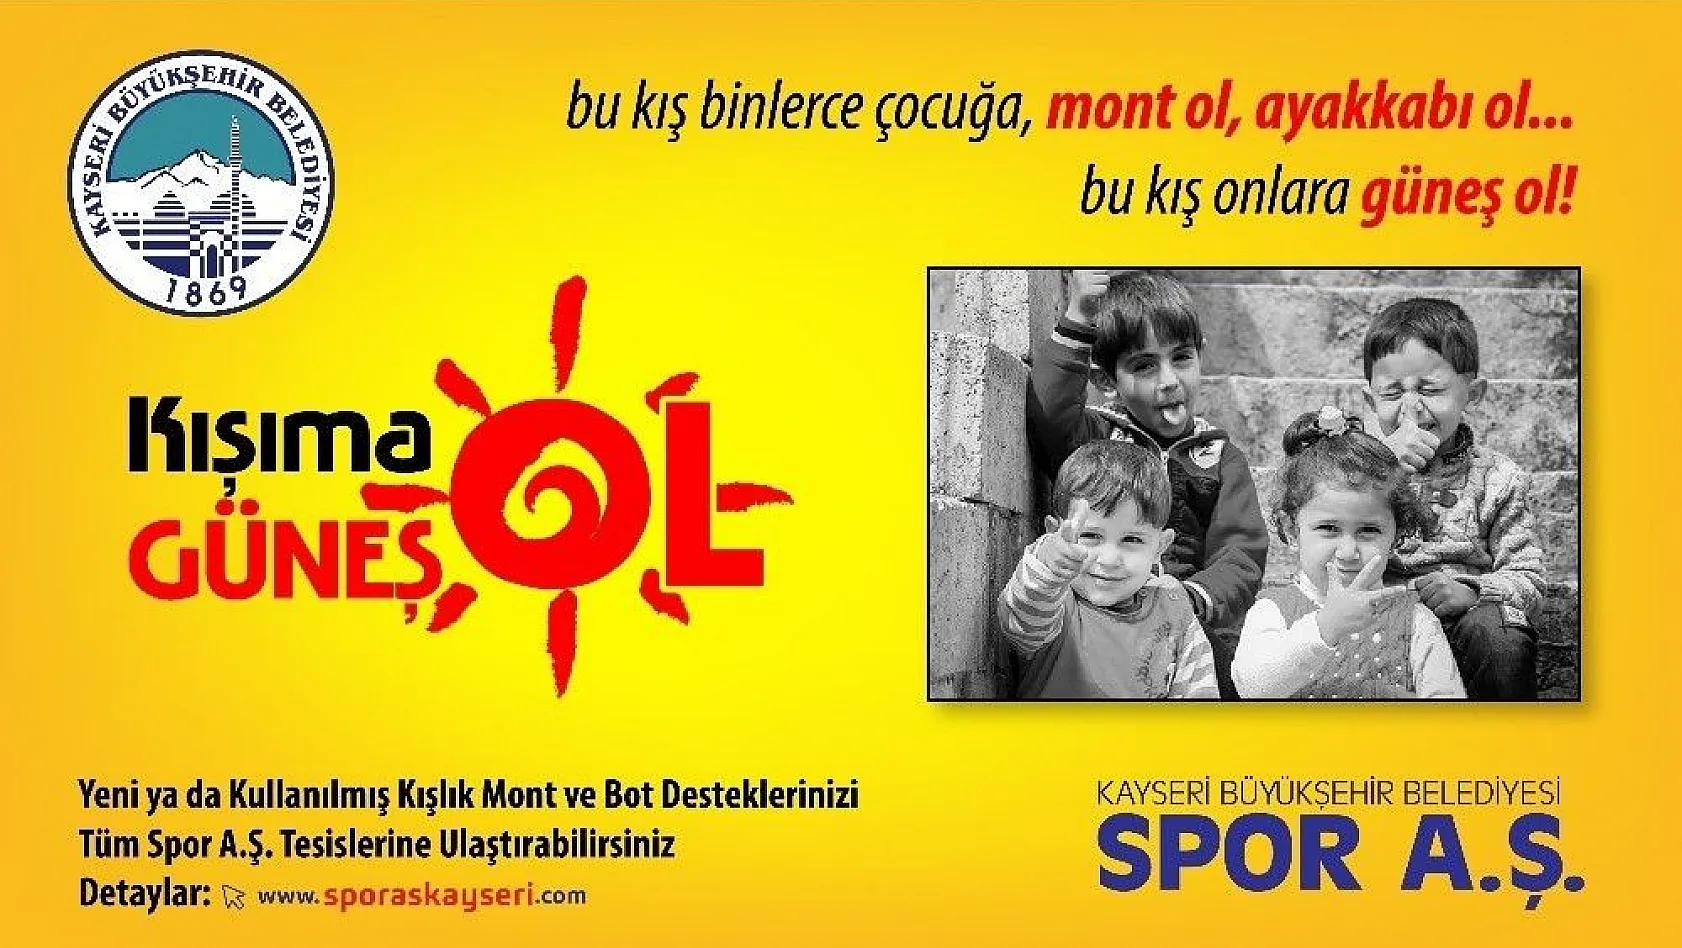 Kayseri Büyükşehir Belediyesi bünyesindeki Spor A.Ş. bir kez daha anlamlı bir kampanyaya imza atıyor
